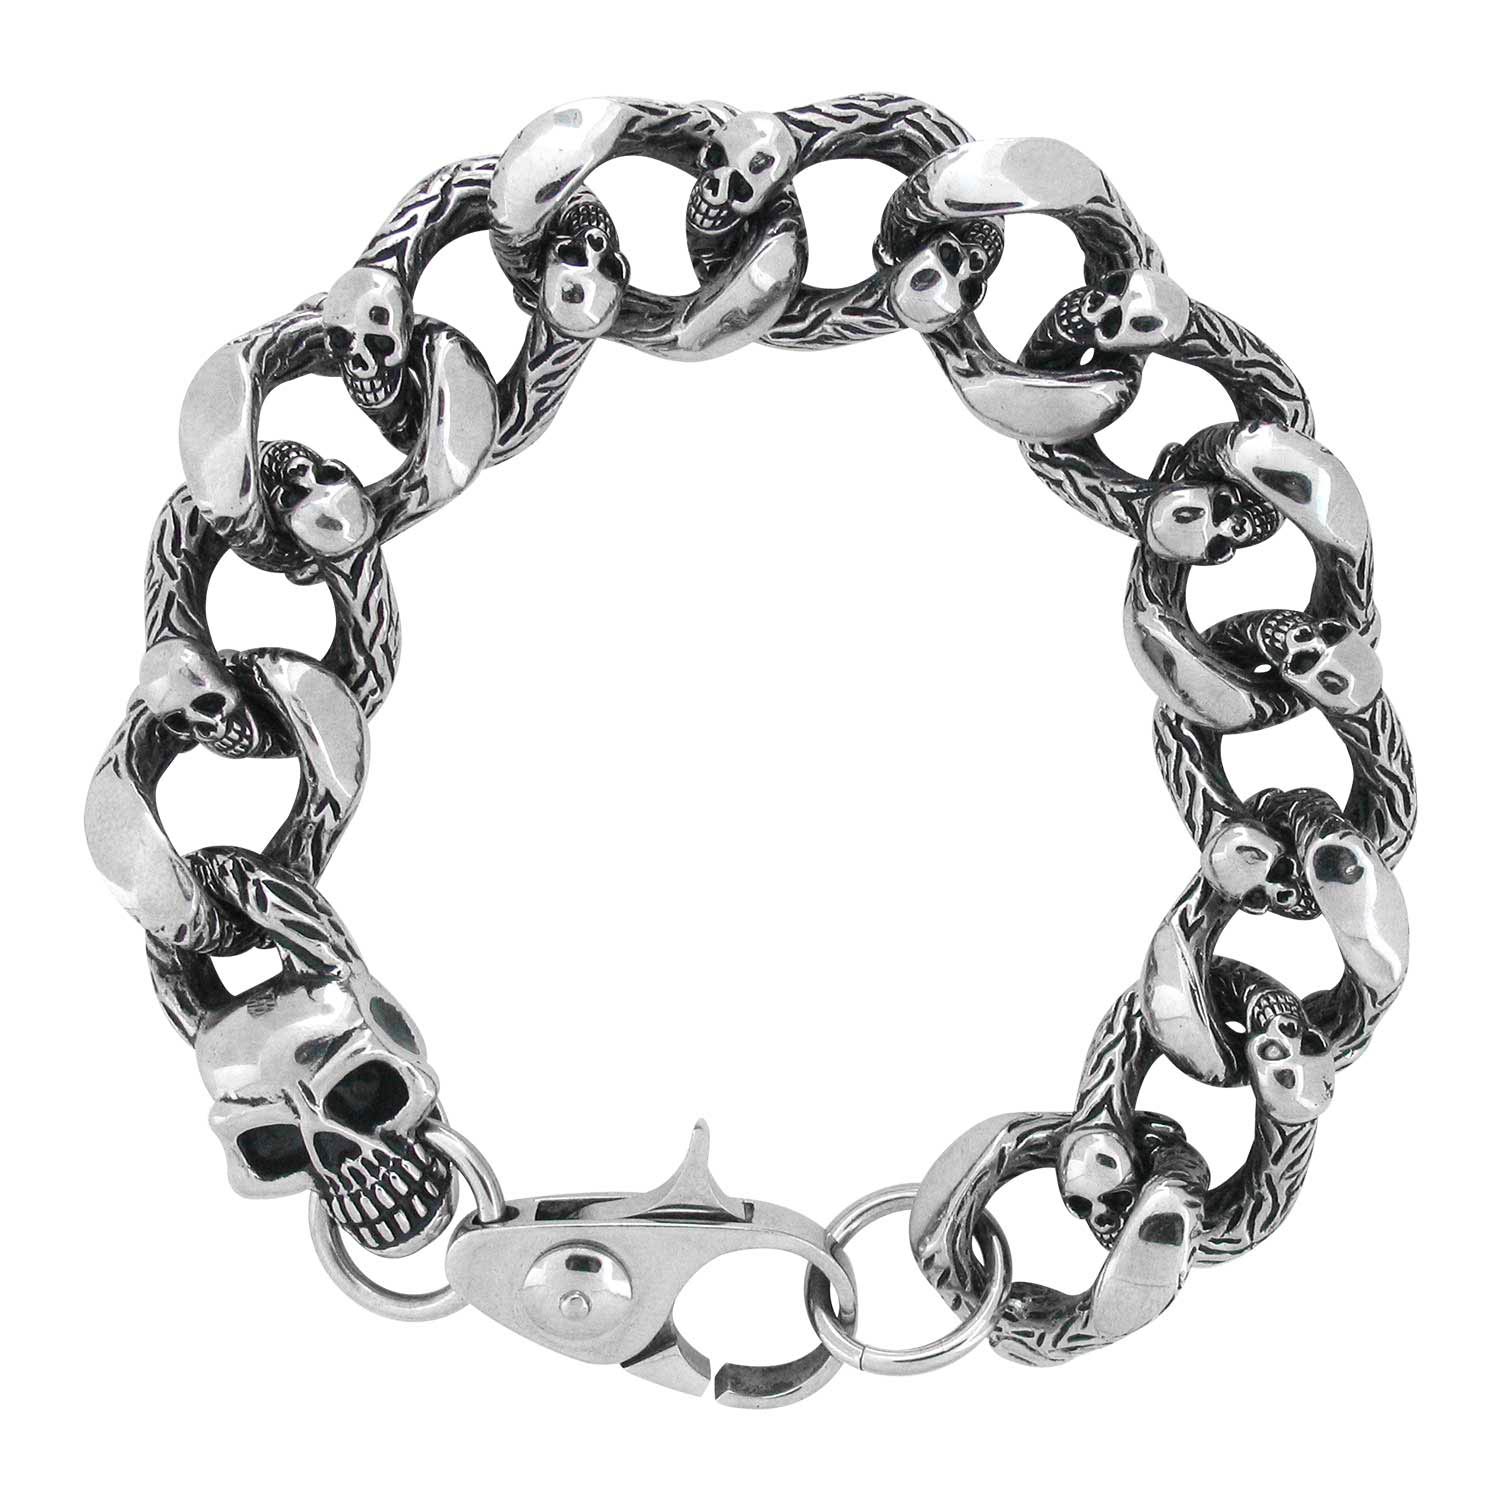 Heavy Duty Curb Chain Bracelet with Casted Skulls Glatz Jewelry Aliquippa, PA